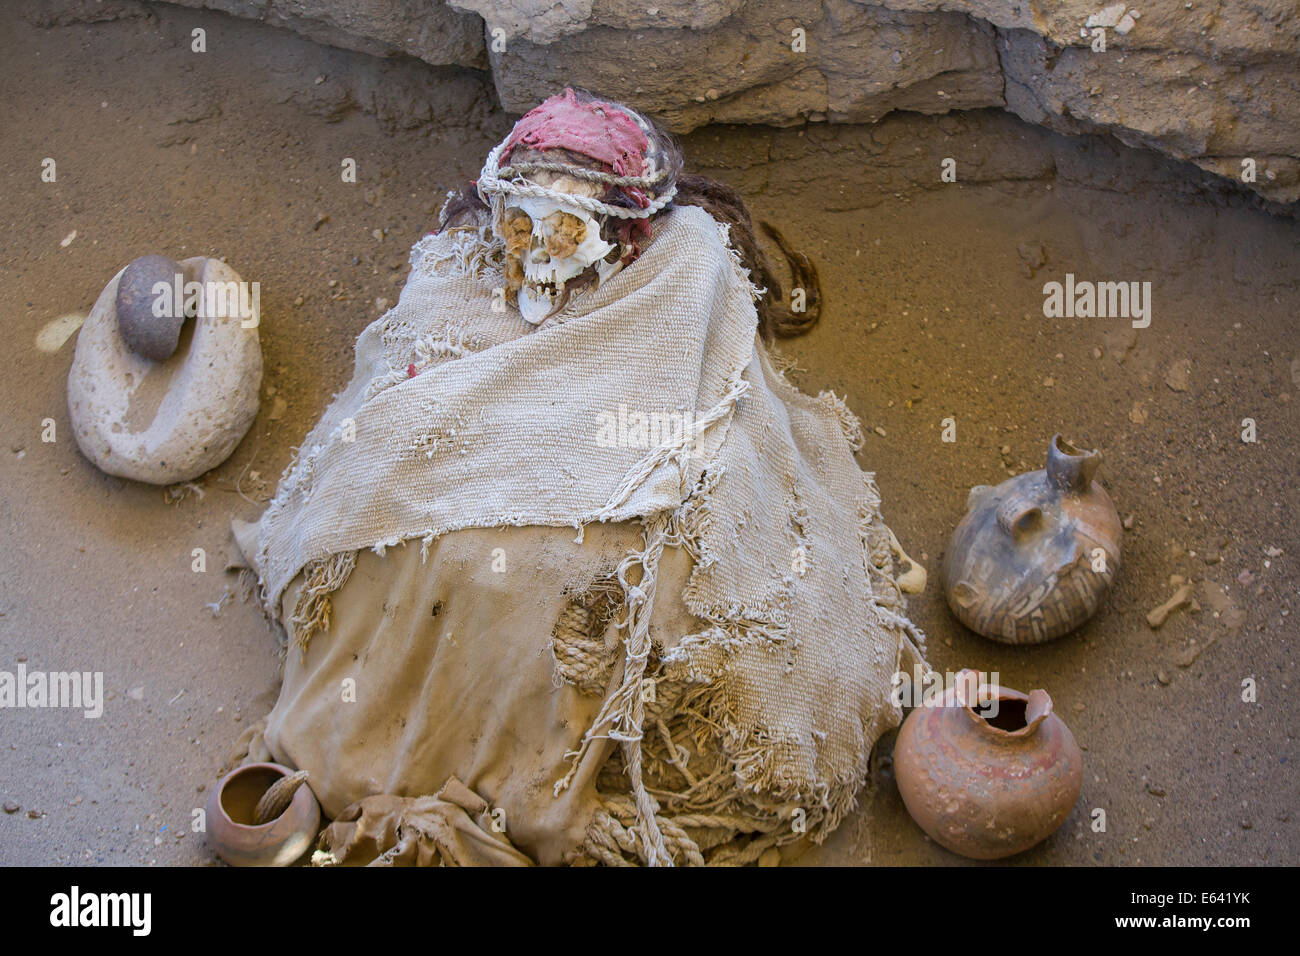 Mumie in Fötusstellung an Chauchilla, einer zweitausend Jahre alten Friedhof in der Wüste von Nazca, Peru. Stockfoto